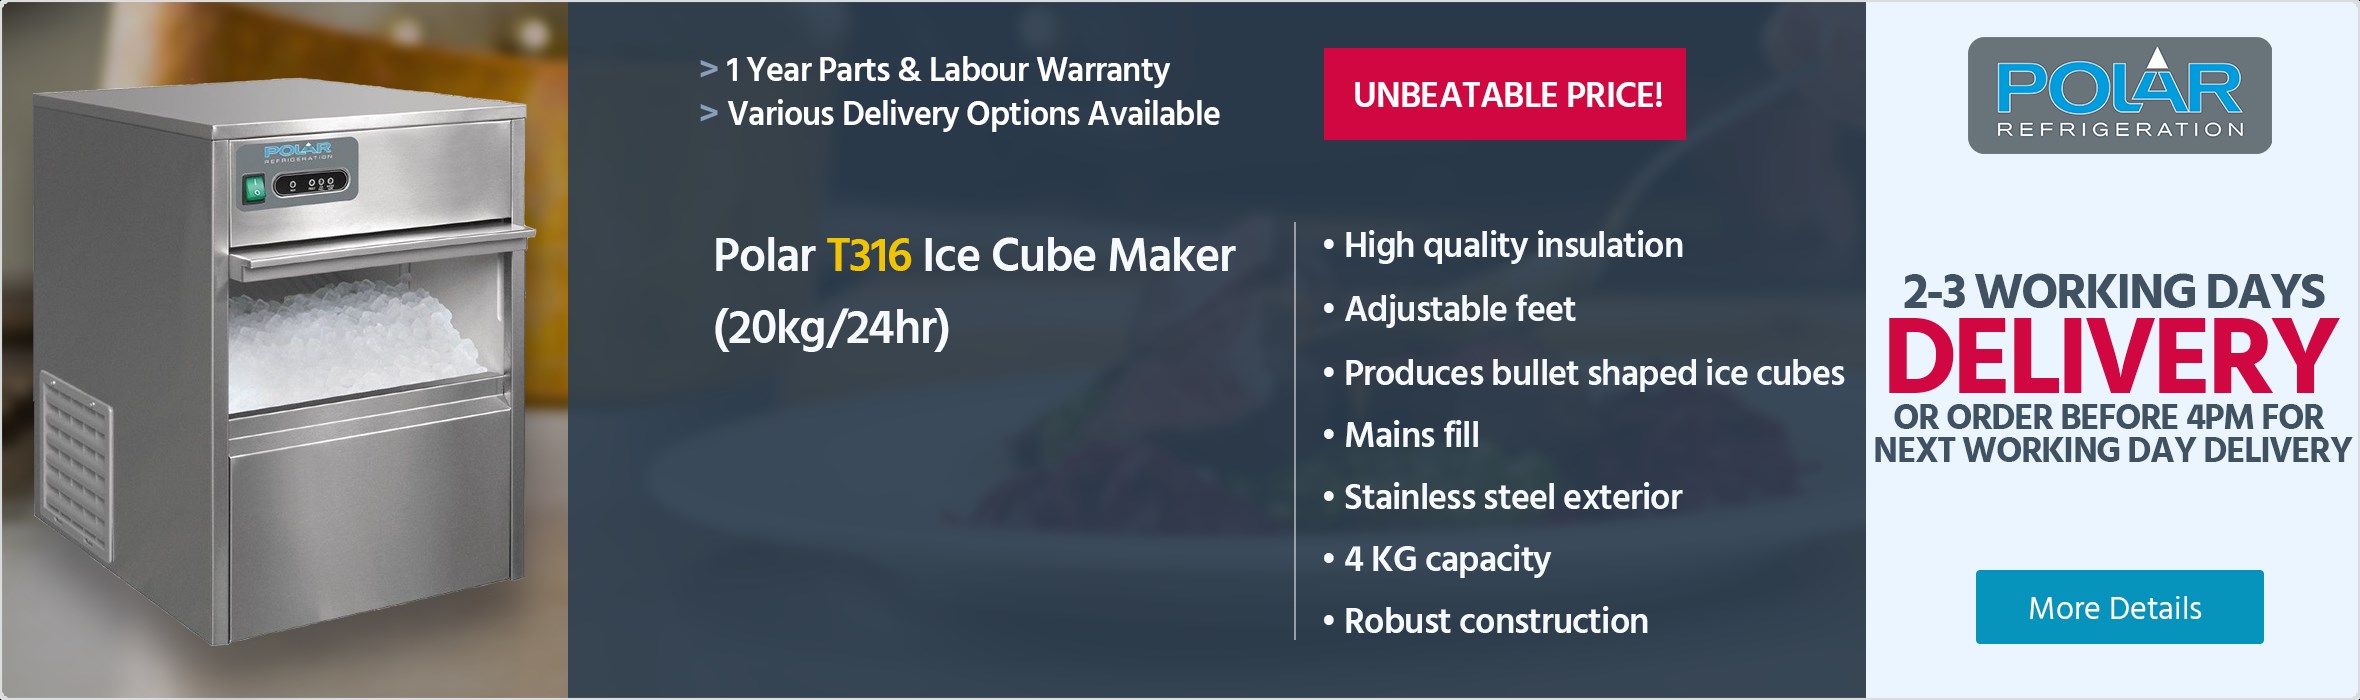 Polar T316 Ice Cube Maker (20kg/24hr)